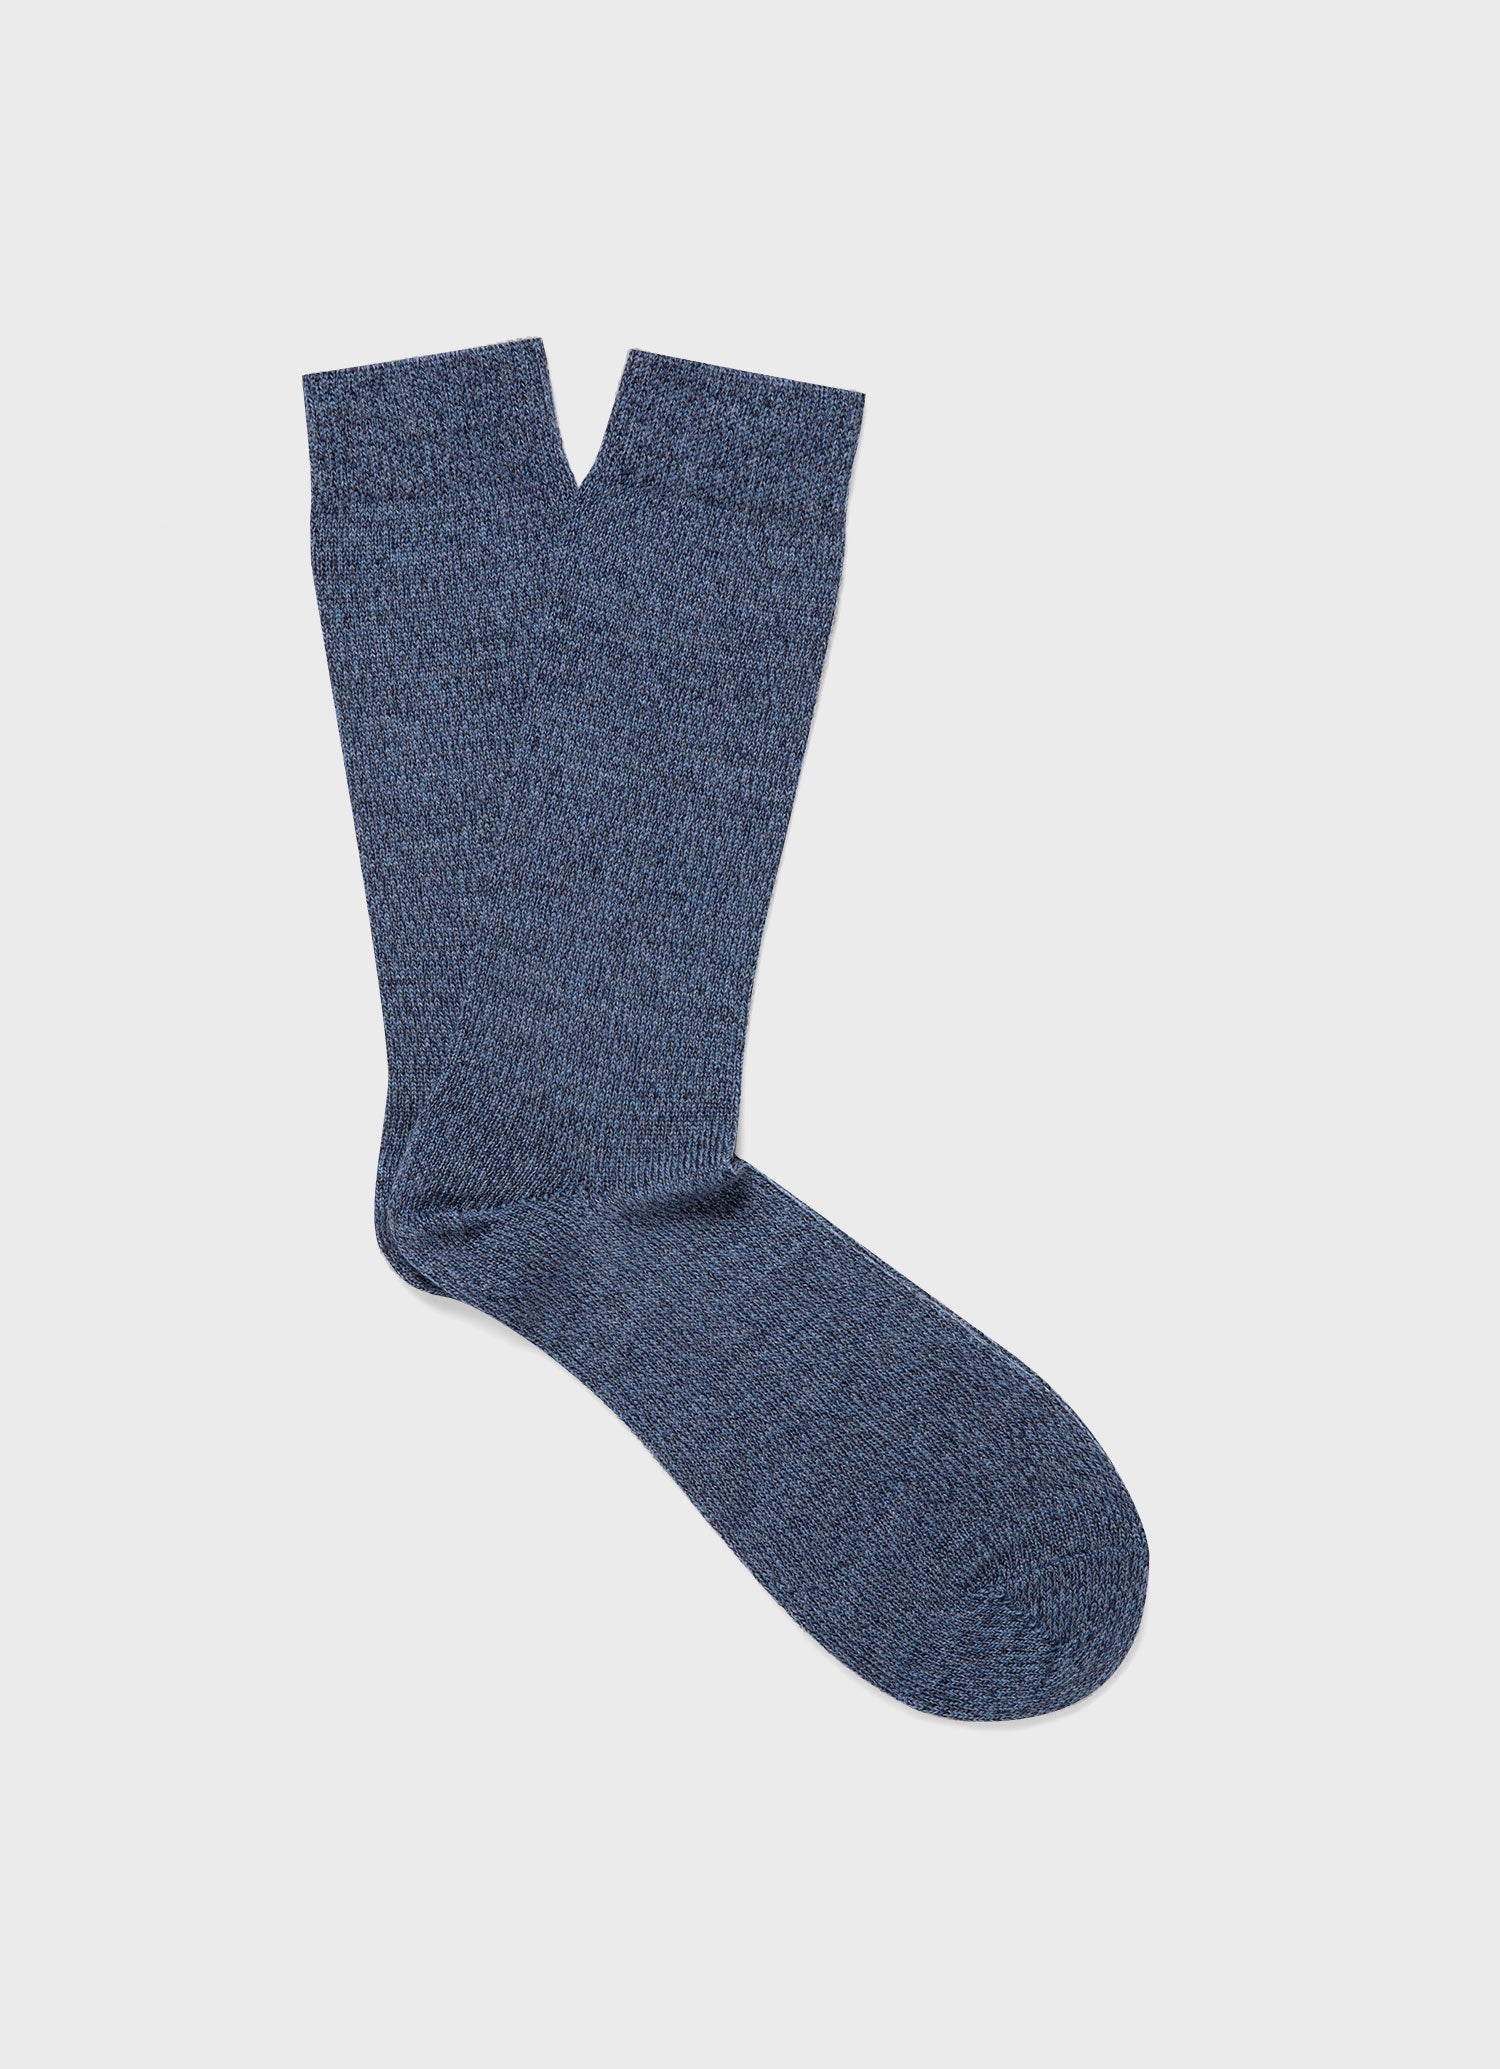 Men's Merino Wool Socks in Slate Blue Twist